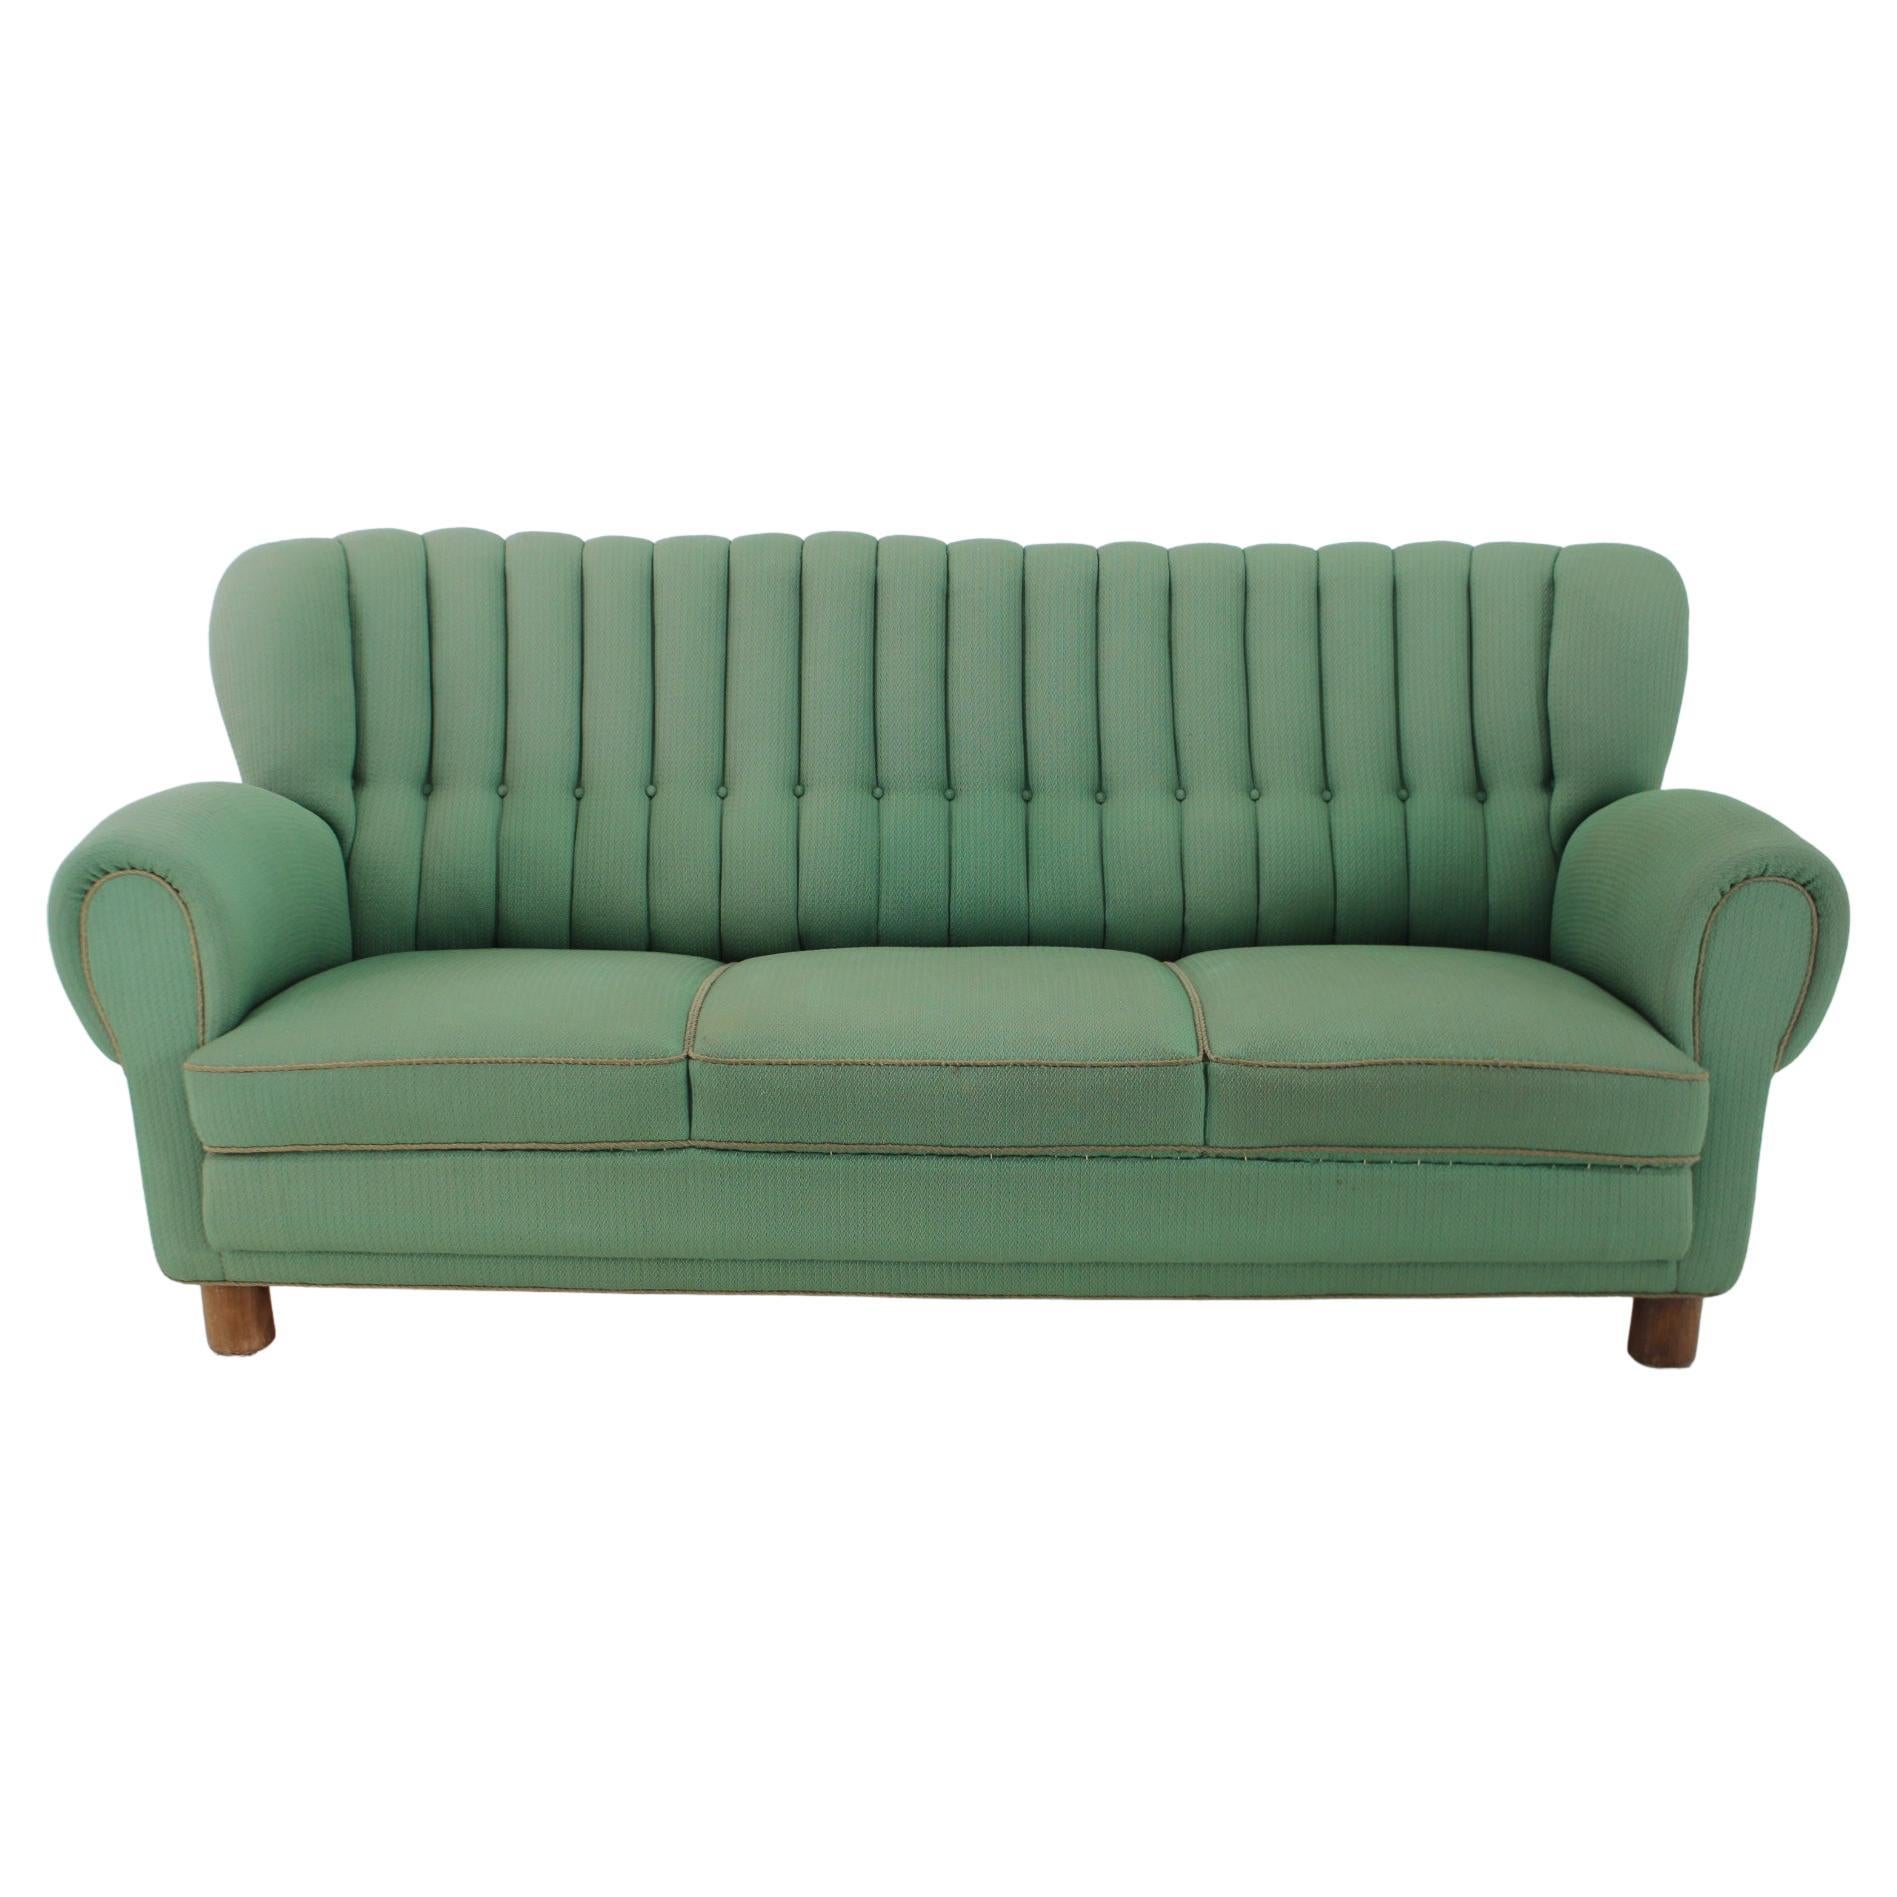 Coyoacan Sofa - For Sale on 1stDibs